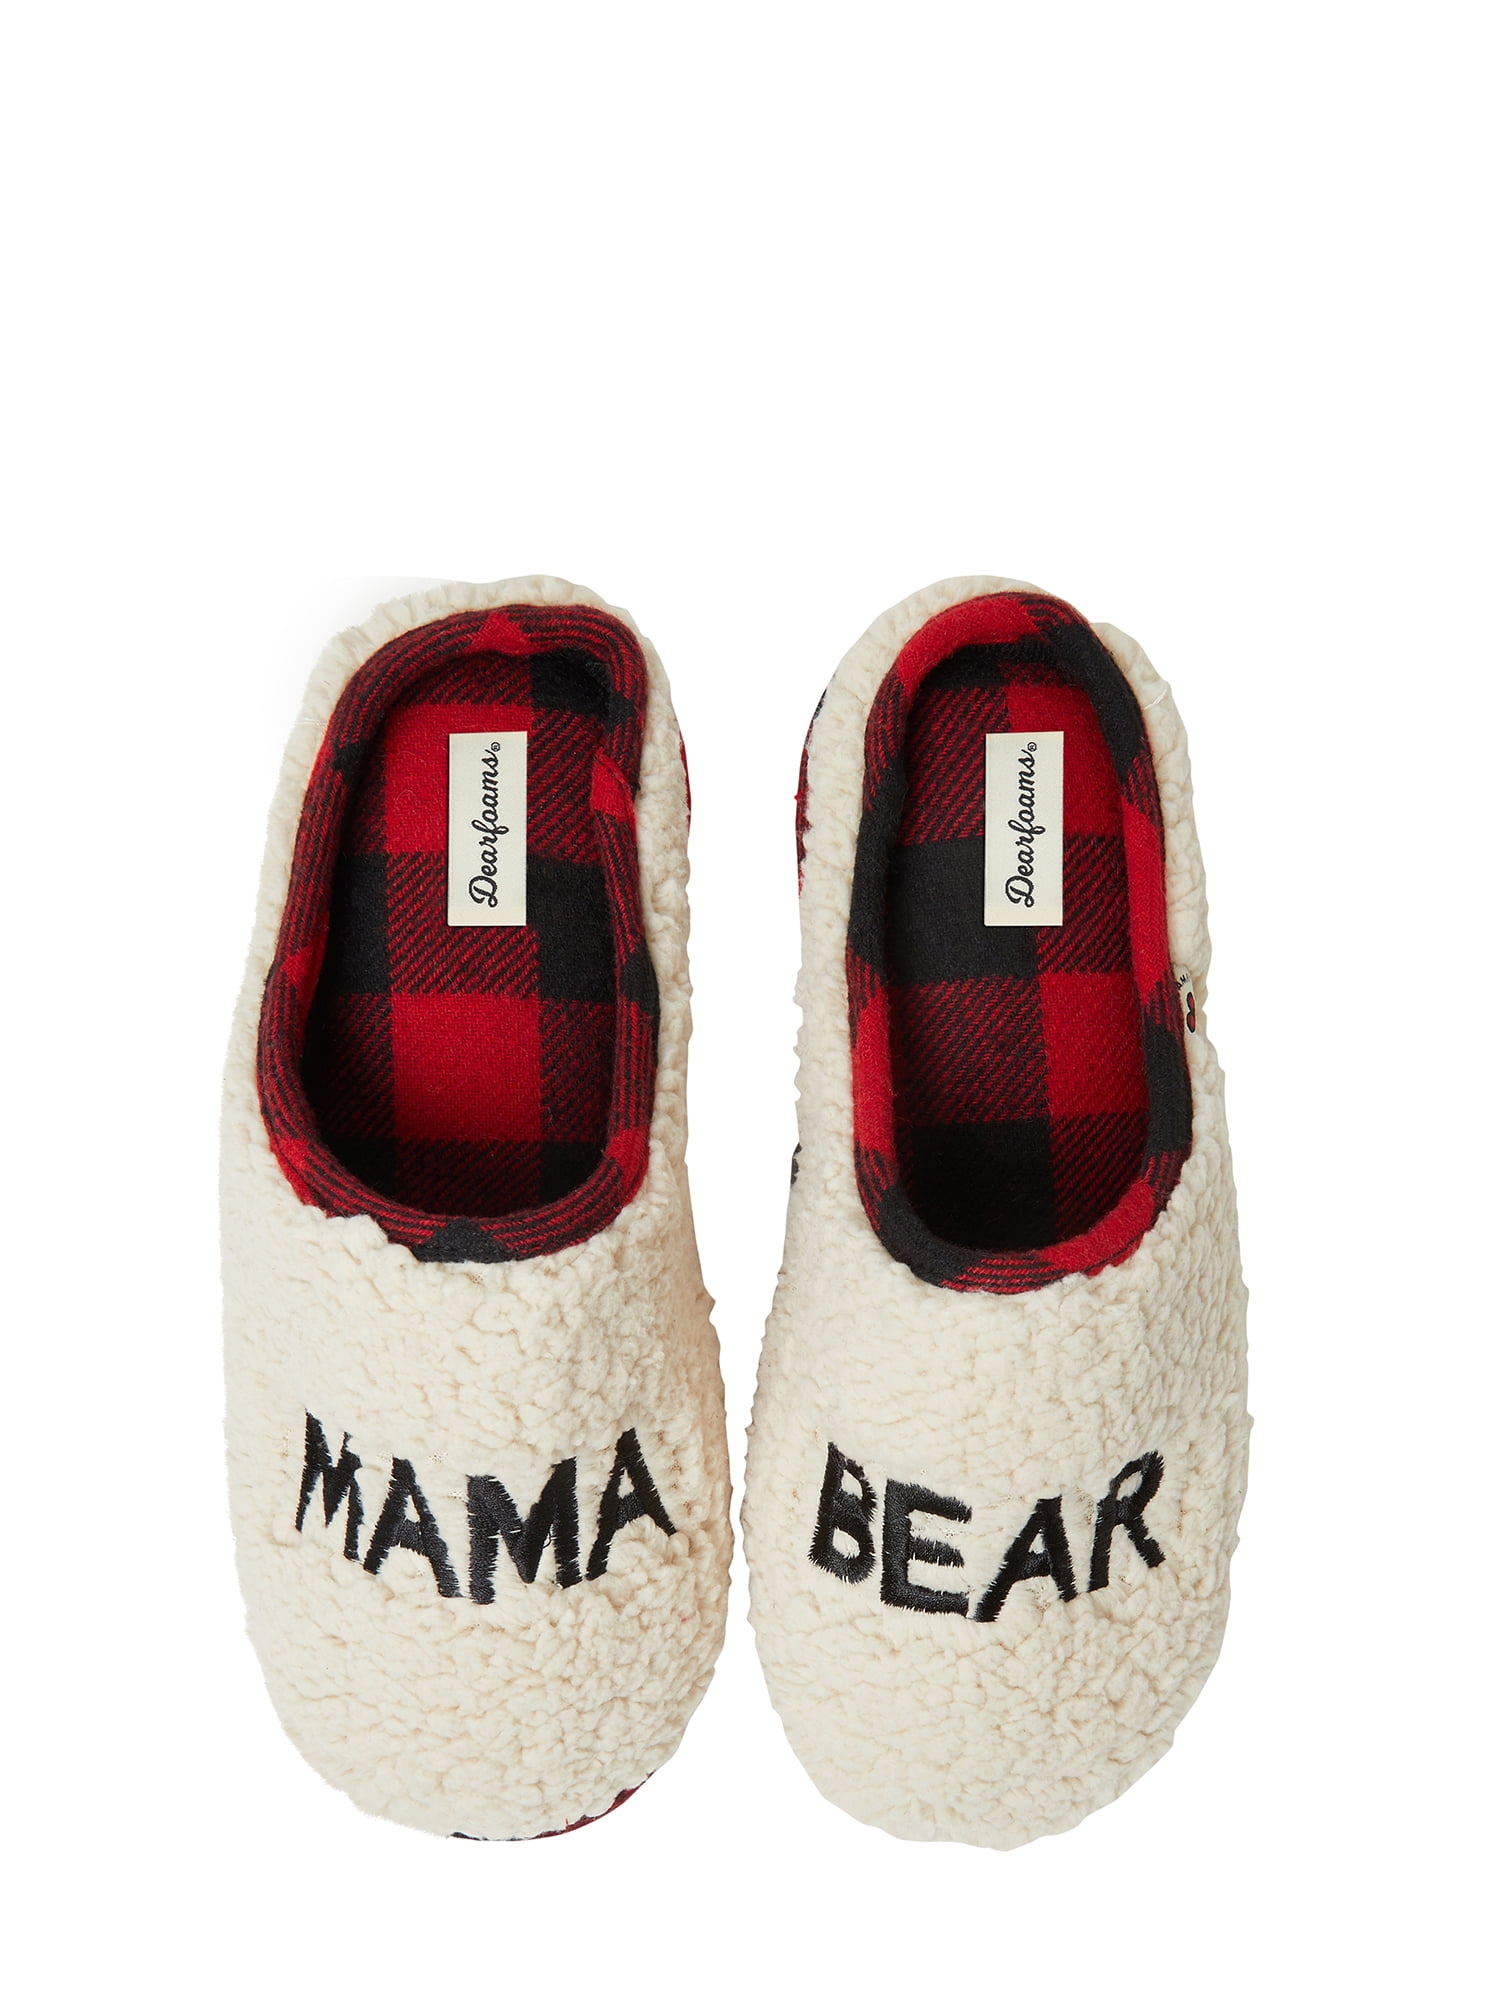 dearfoams slippers walmart